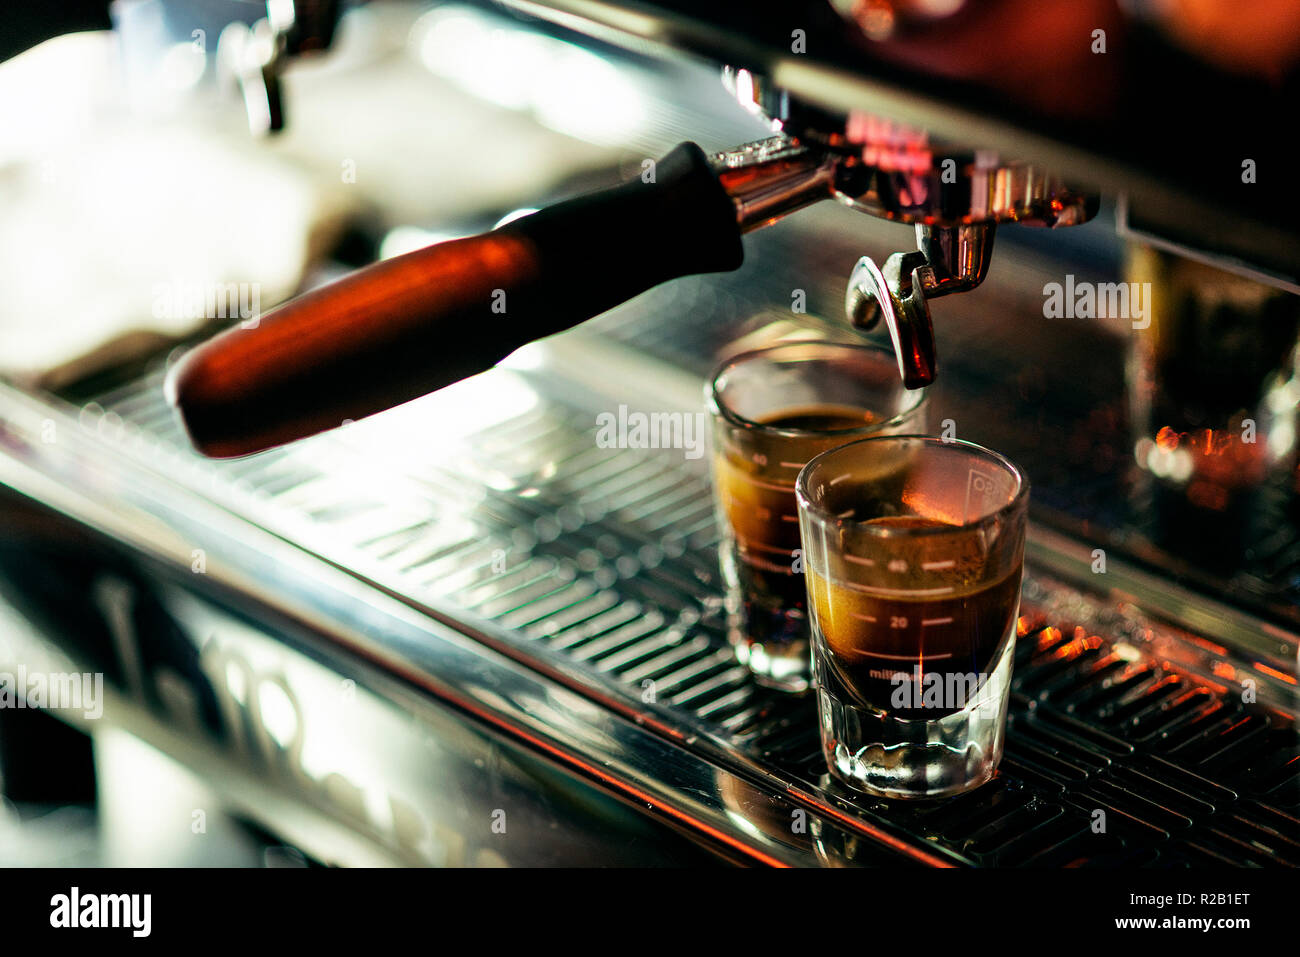 La preparazione di caffè espresso close up dettaglio con caffetteria moderna macchina e bicchieri Foto Stock